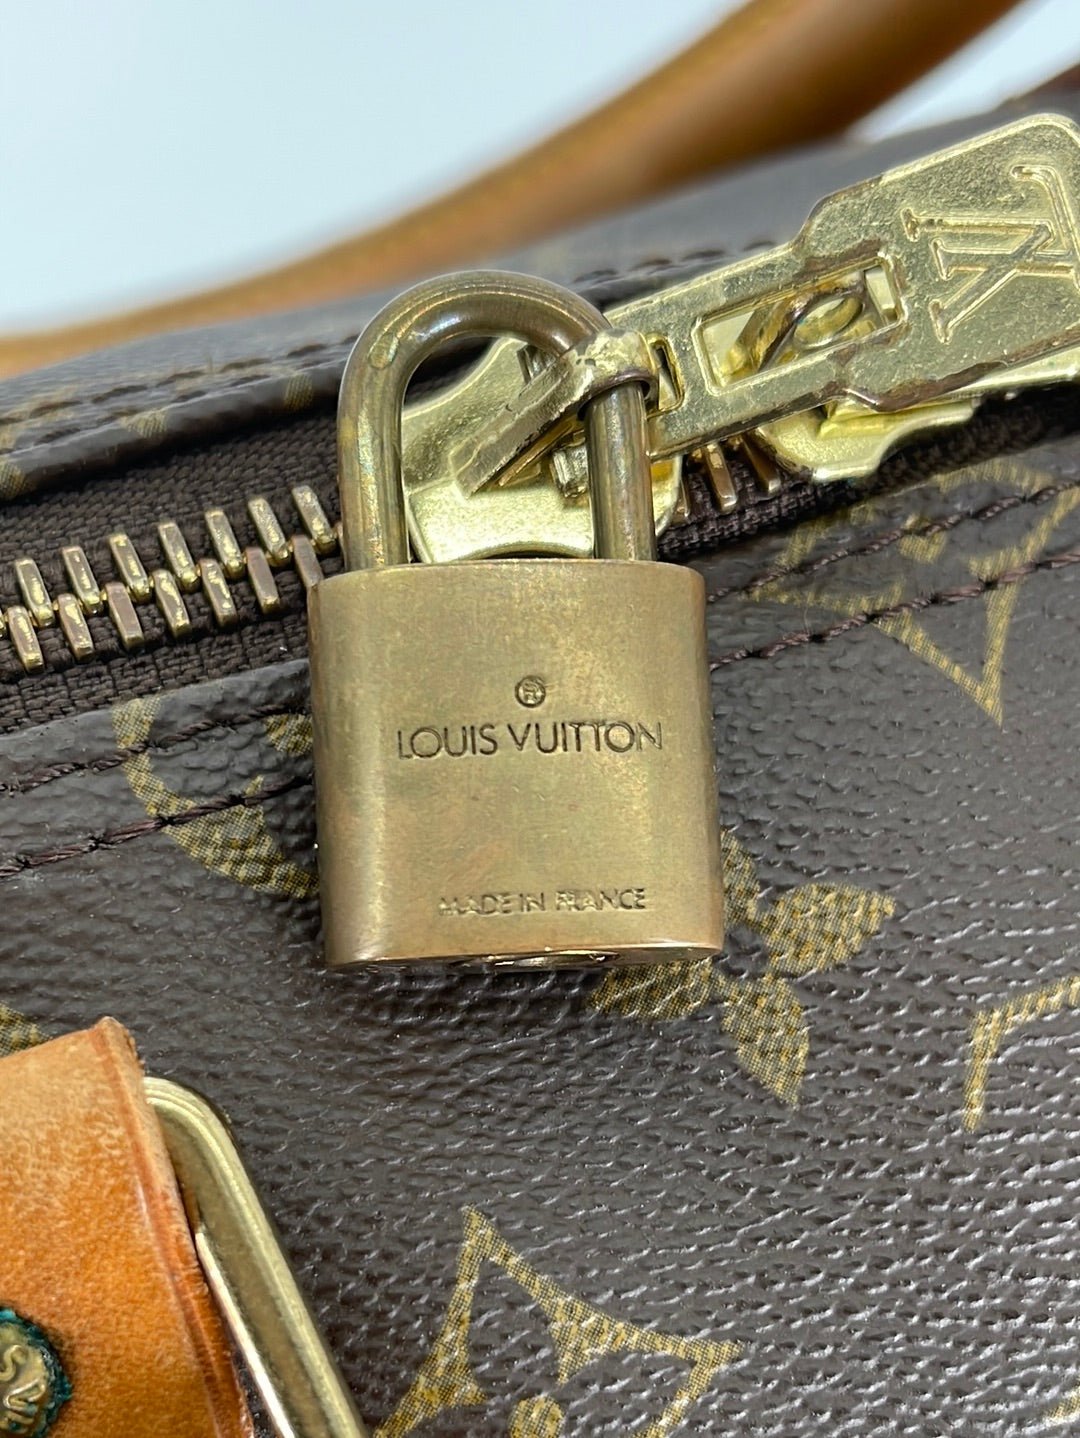 PRELOVED Louis Vuitton Keepall 55 Monogram Duffel Bag VI0923 030723 –  KimmieBBags LLC